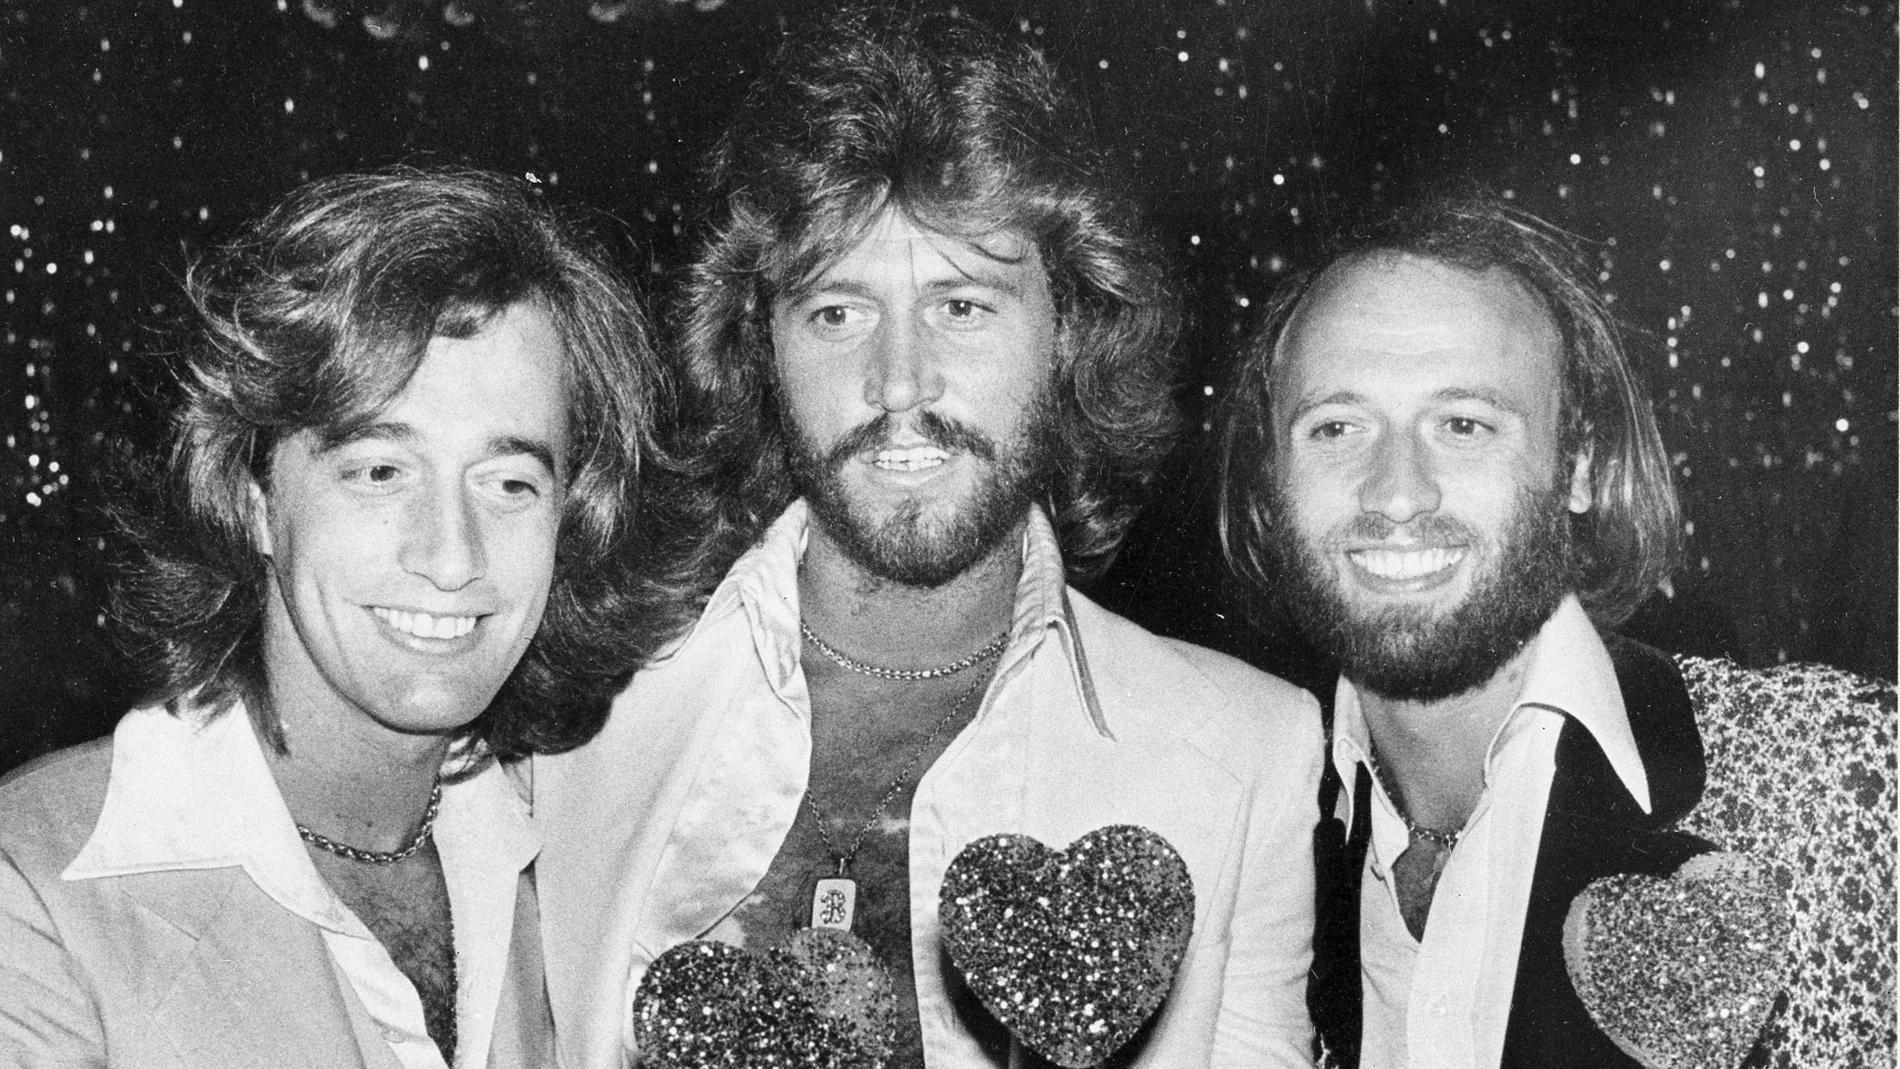 Desde la izquierda, Robin, Barry y Maurice Gibb, integrantes de los Bee Gees